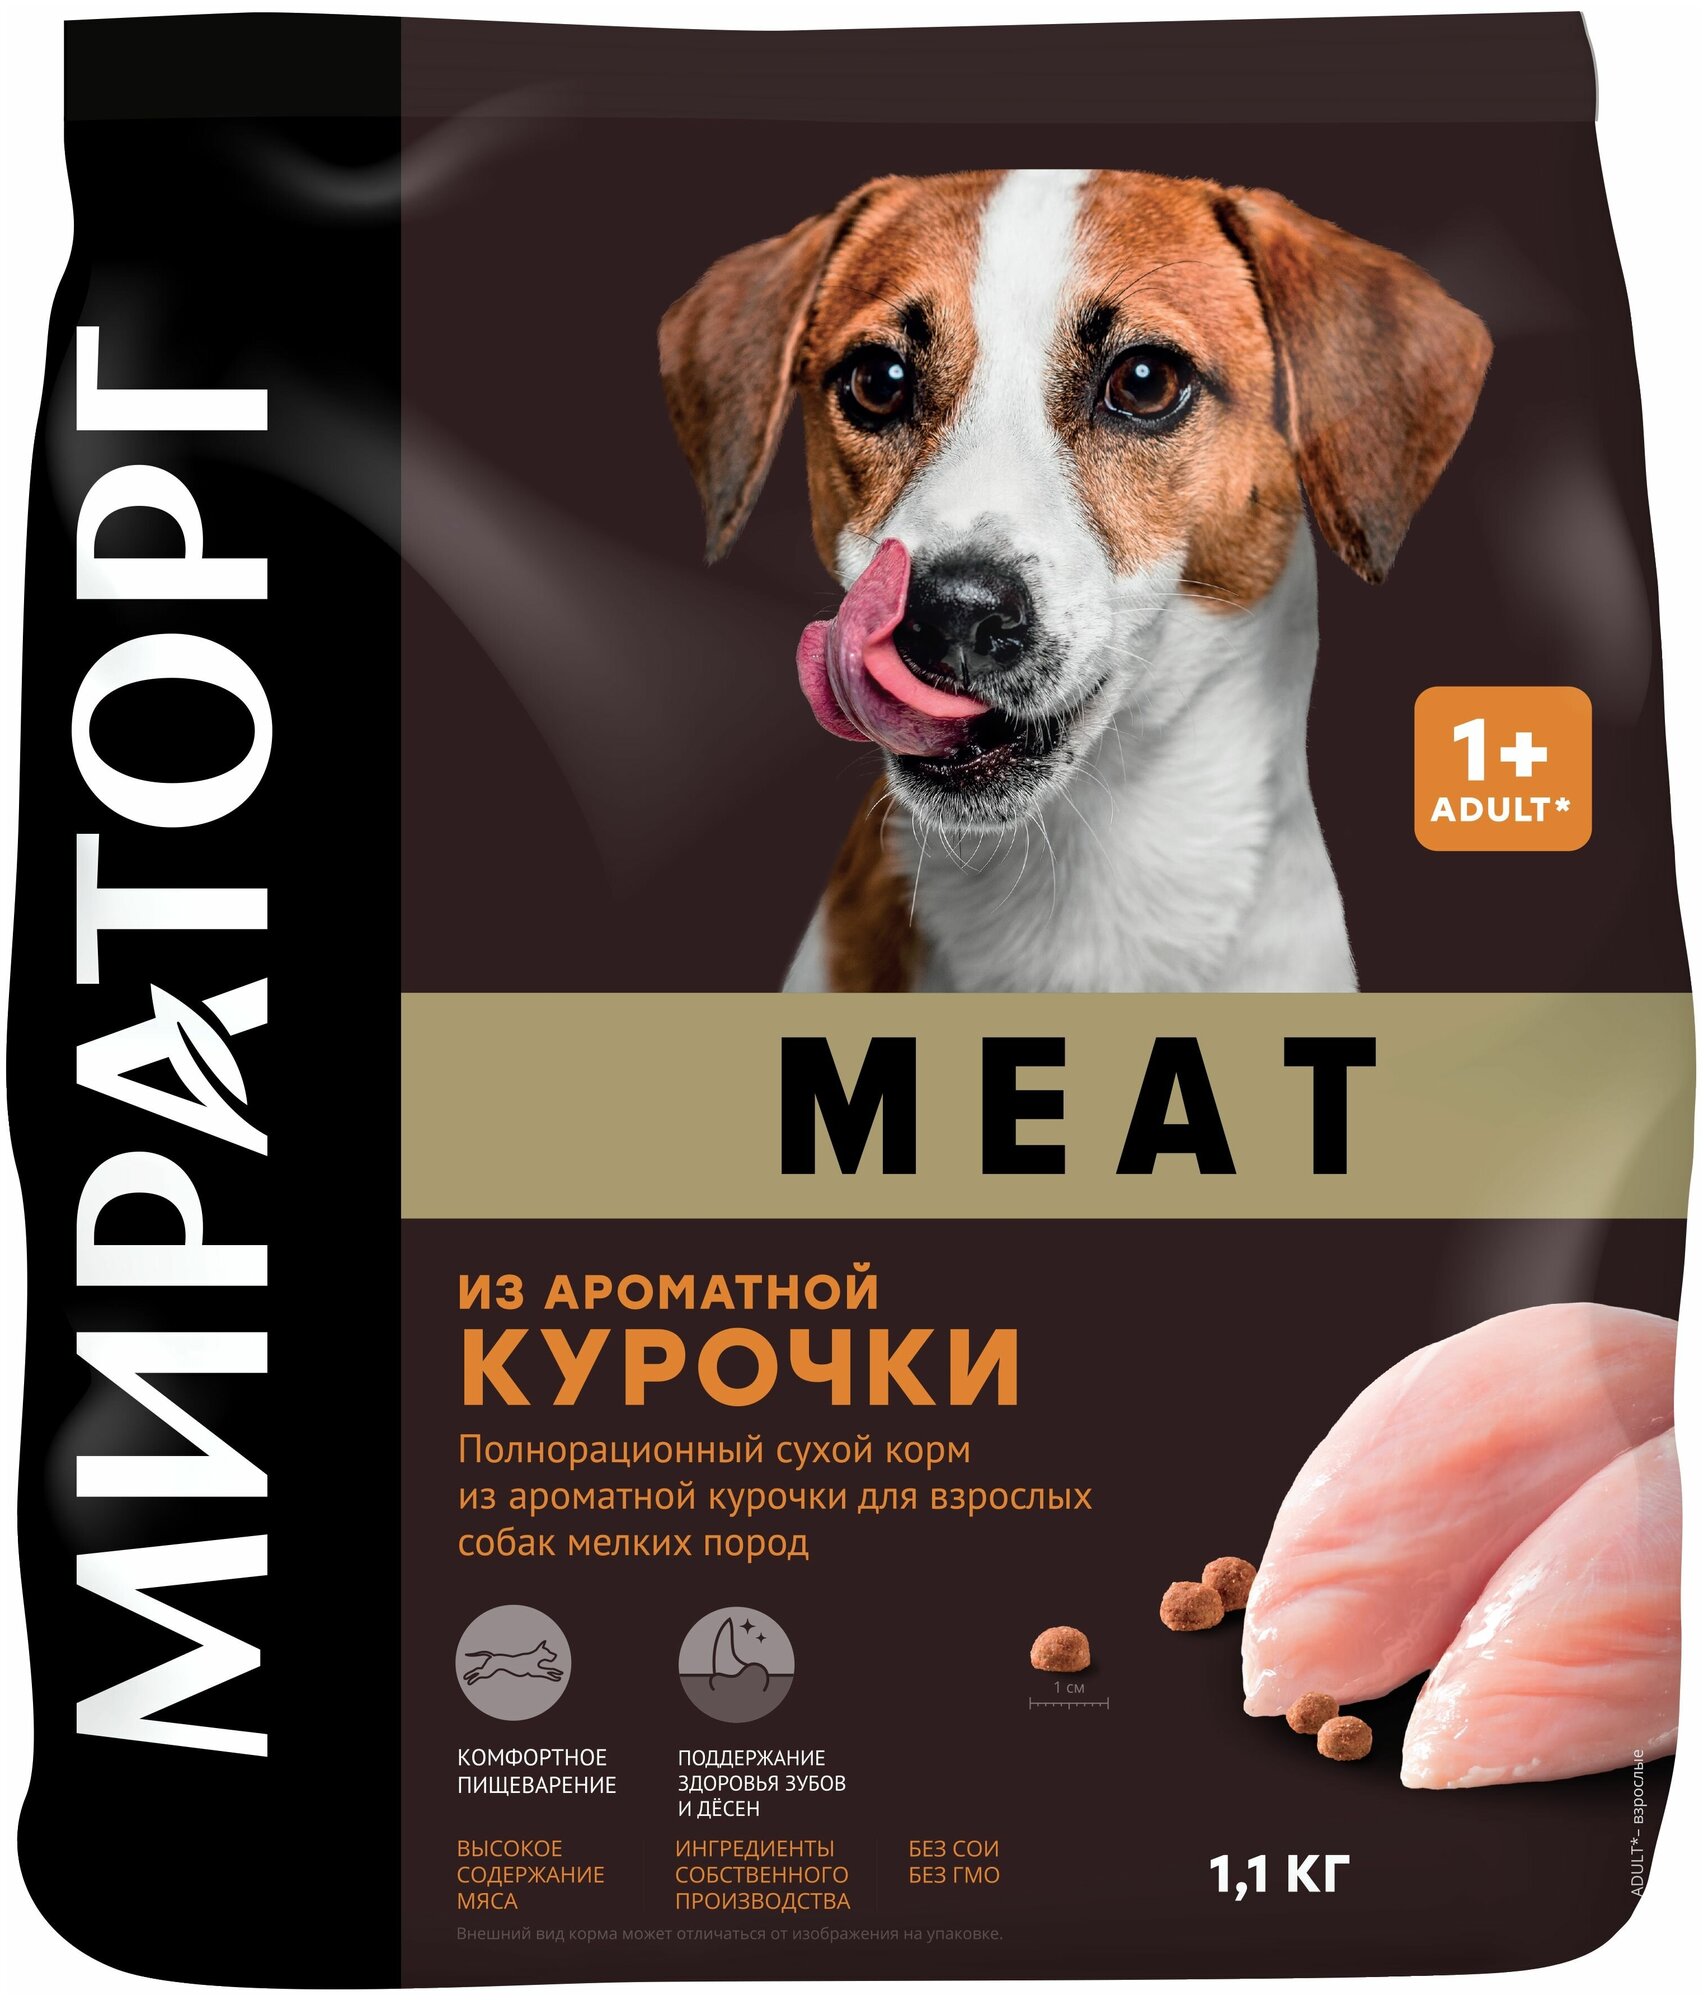 Полнорационный сухой корм мираторг MEAT из ароматной курочки для взрослых собак мелких пород 11 кг Россия